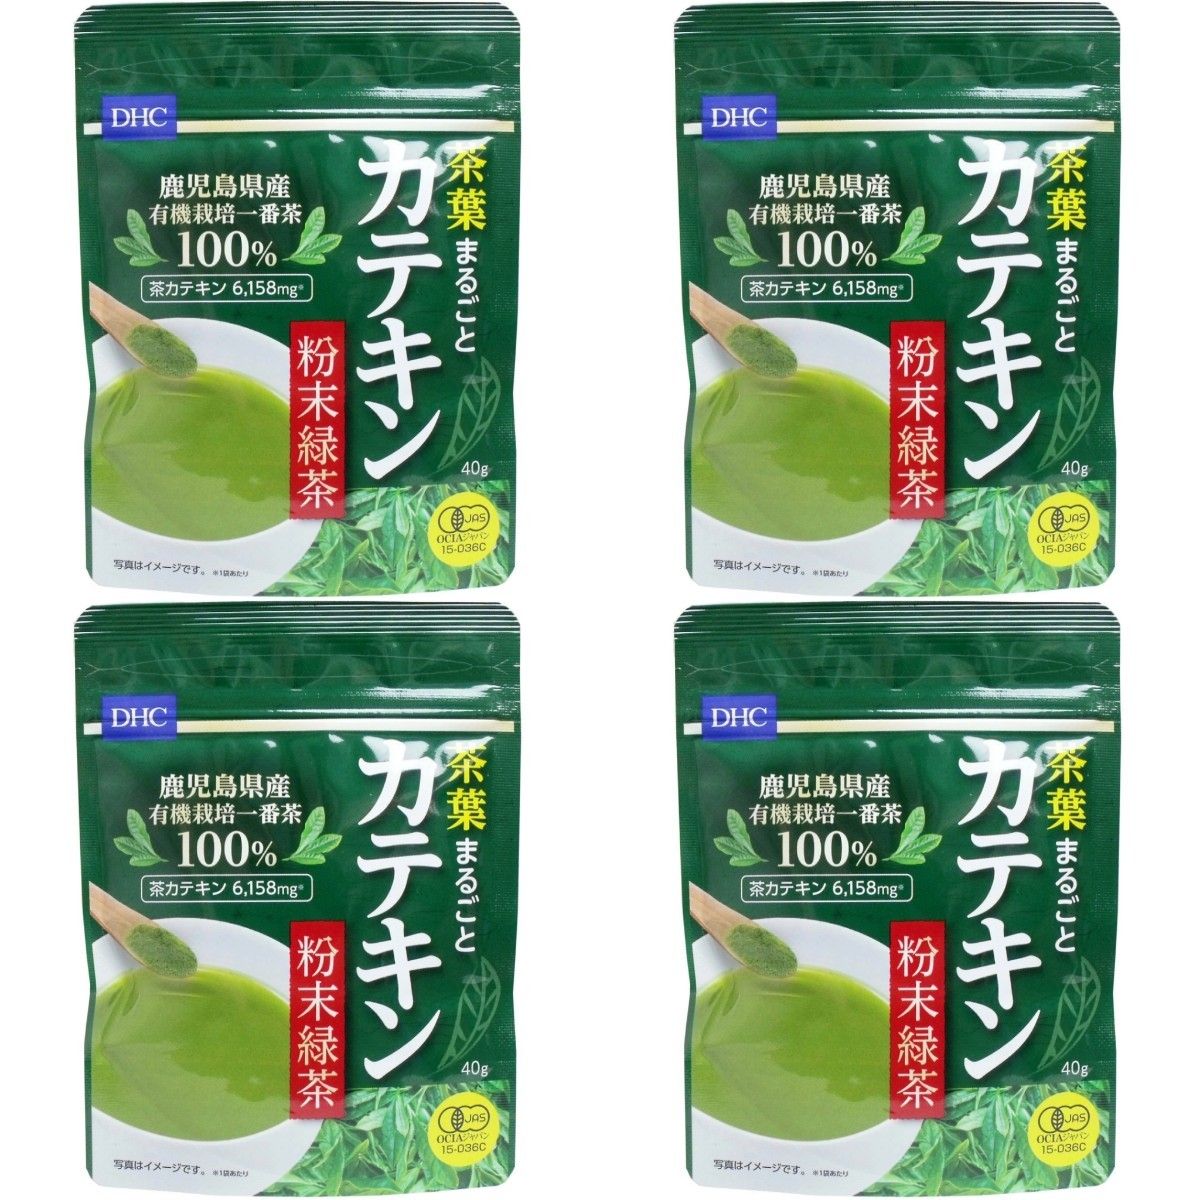 【４袋】 DHC 茶葉まるごとカテキン 粉末緑茶 国産茶葉使用 鹿児島県産 グリーンティー 無糖 健康食品 美肌 ダイエット